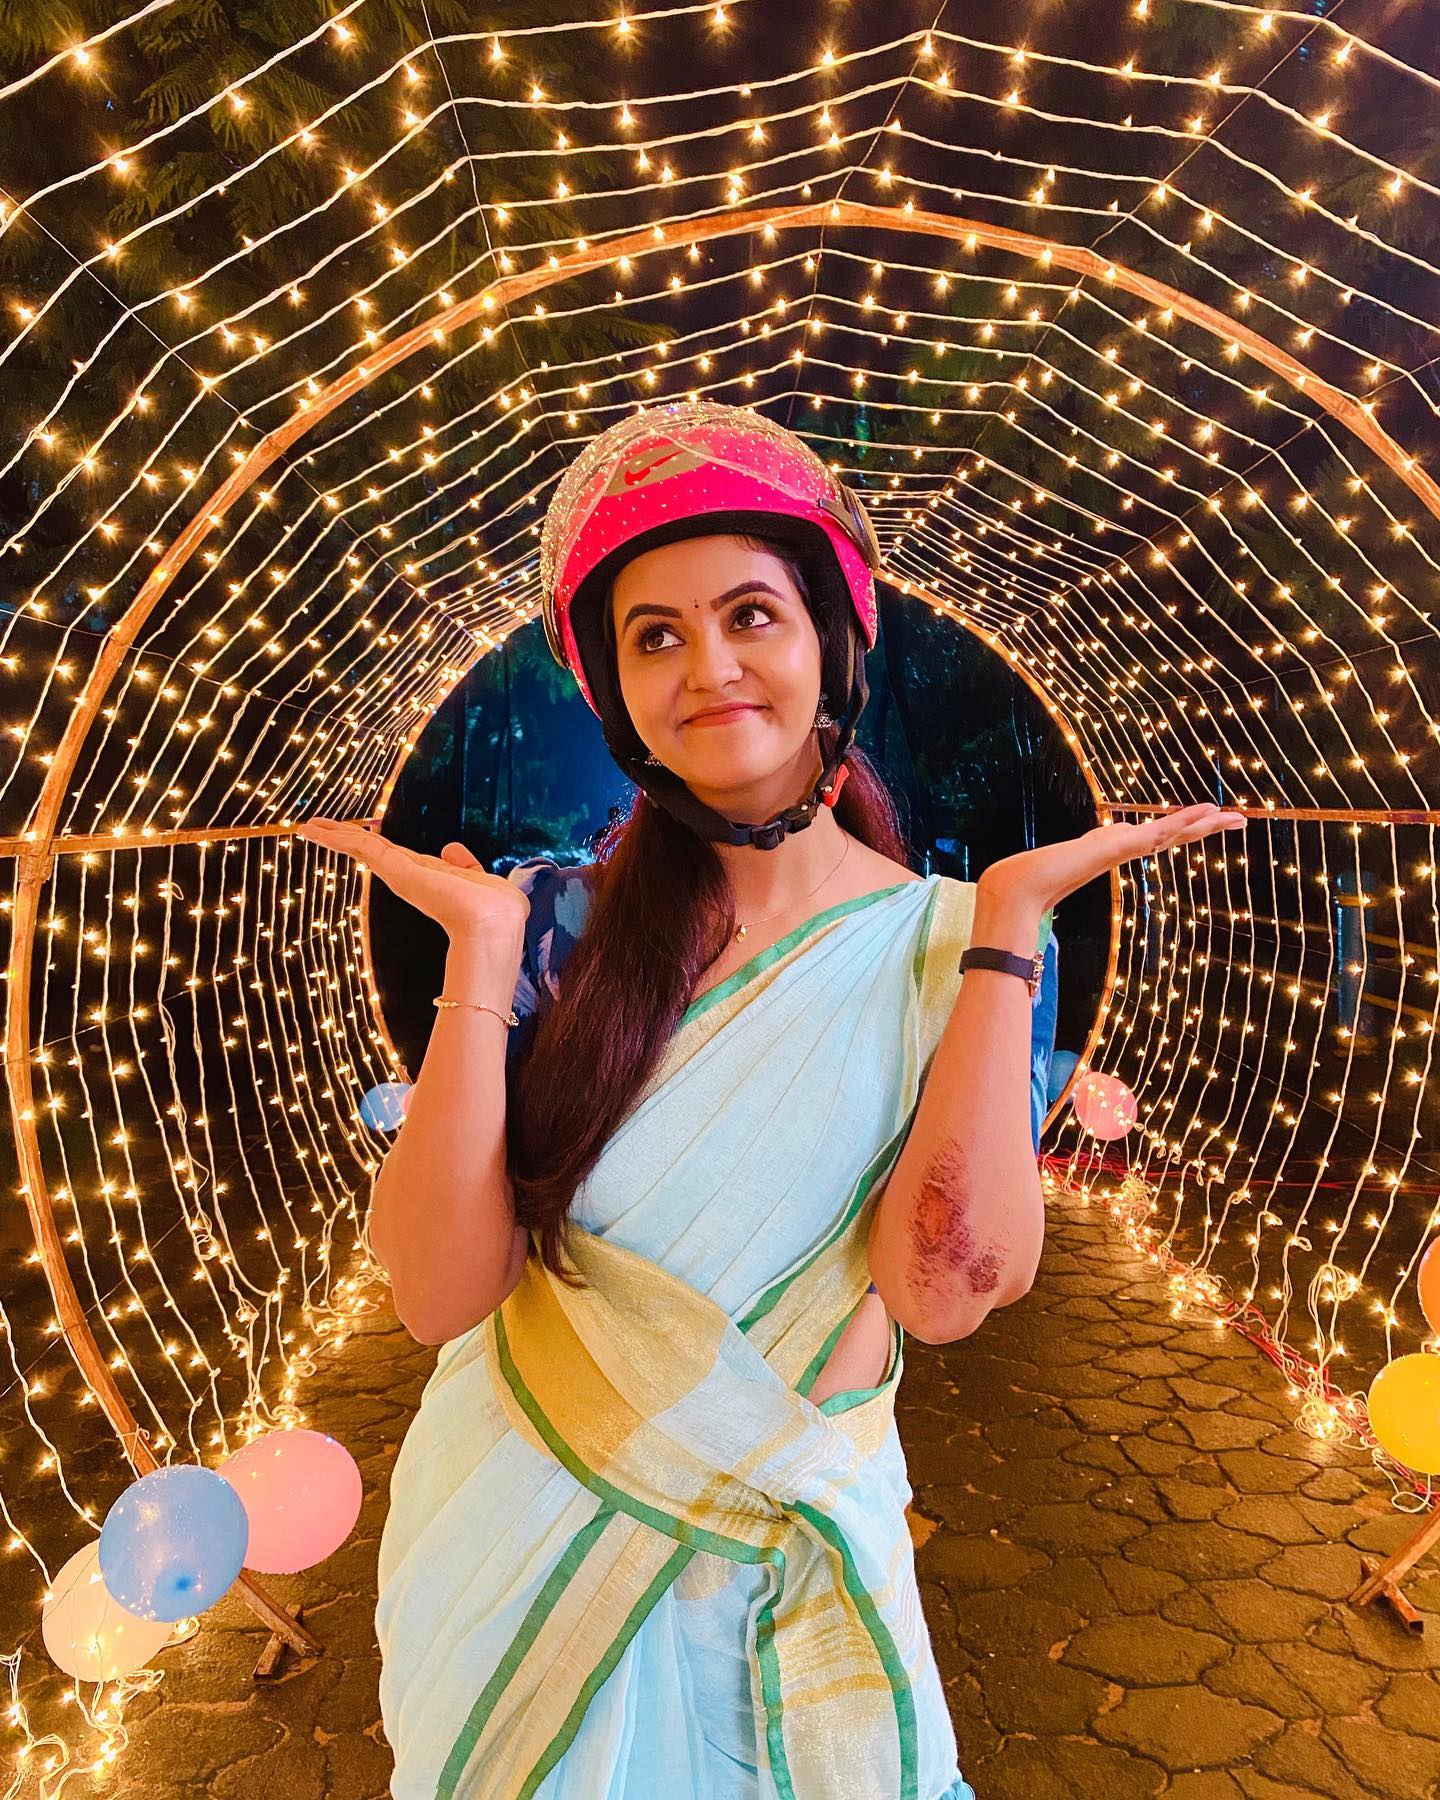  சீரியல் நடிகை சைத்ரா ரெட்டி ( Image : Instagram @chaitrareddy_official)